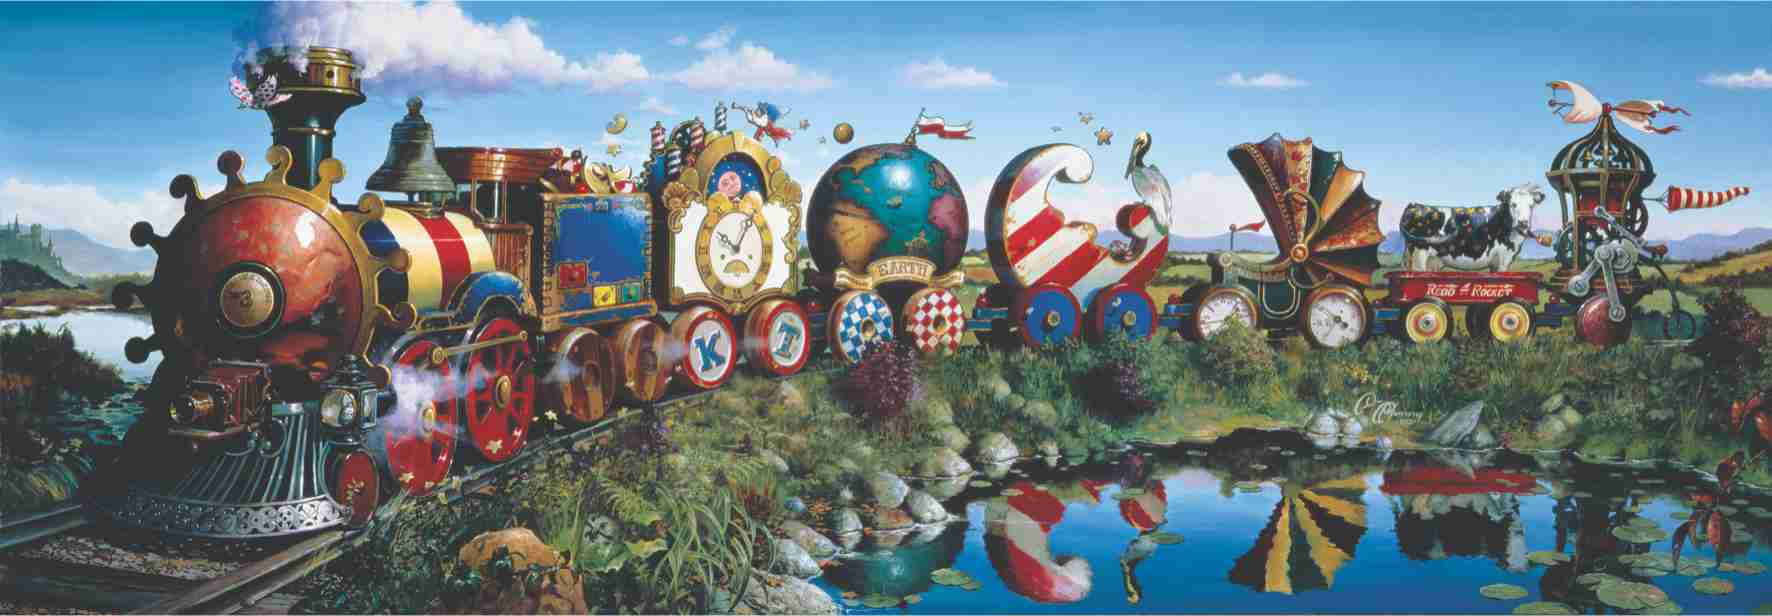 Puzzle Verhaal trein